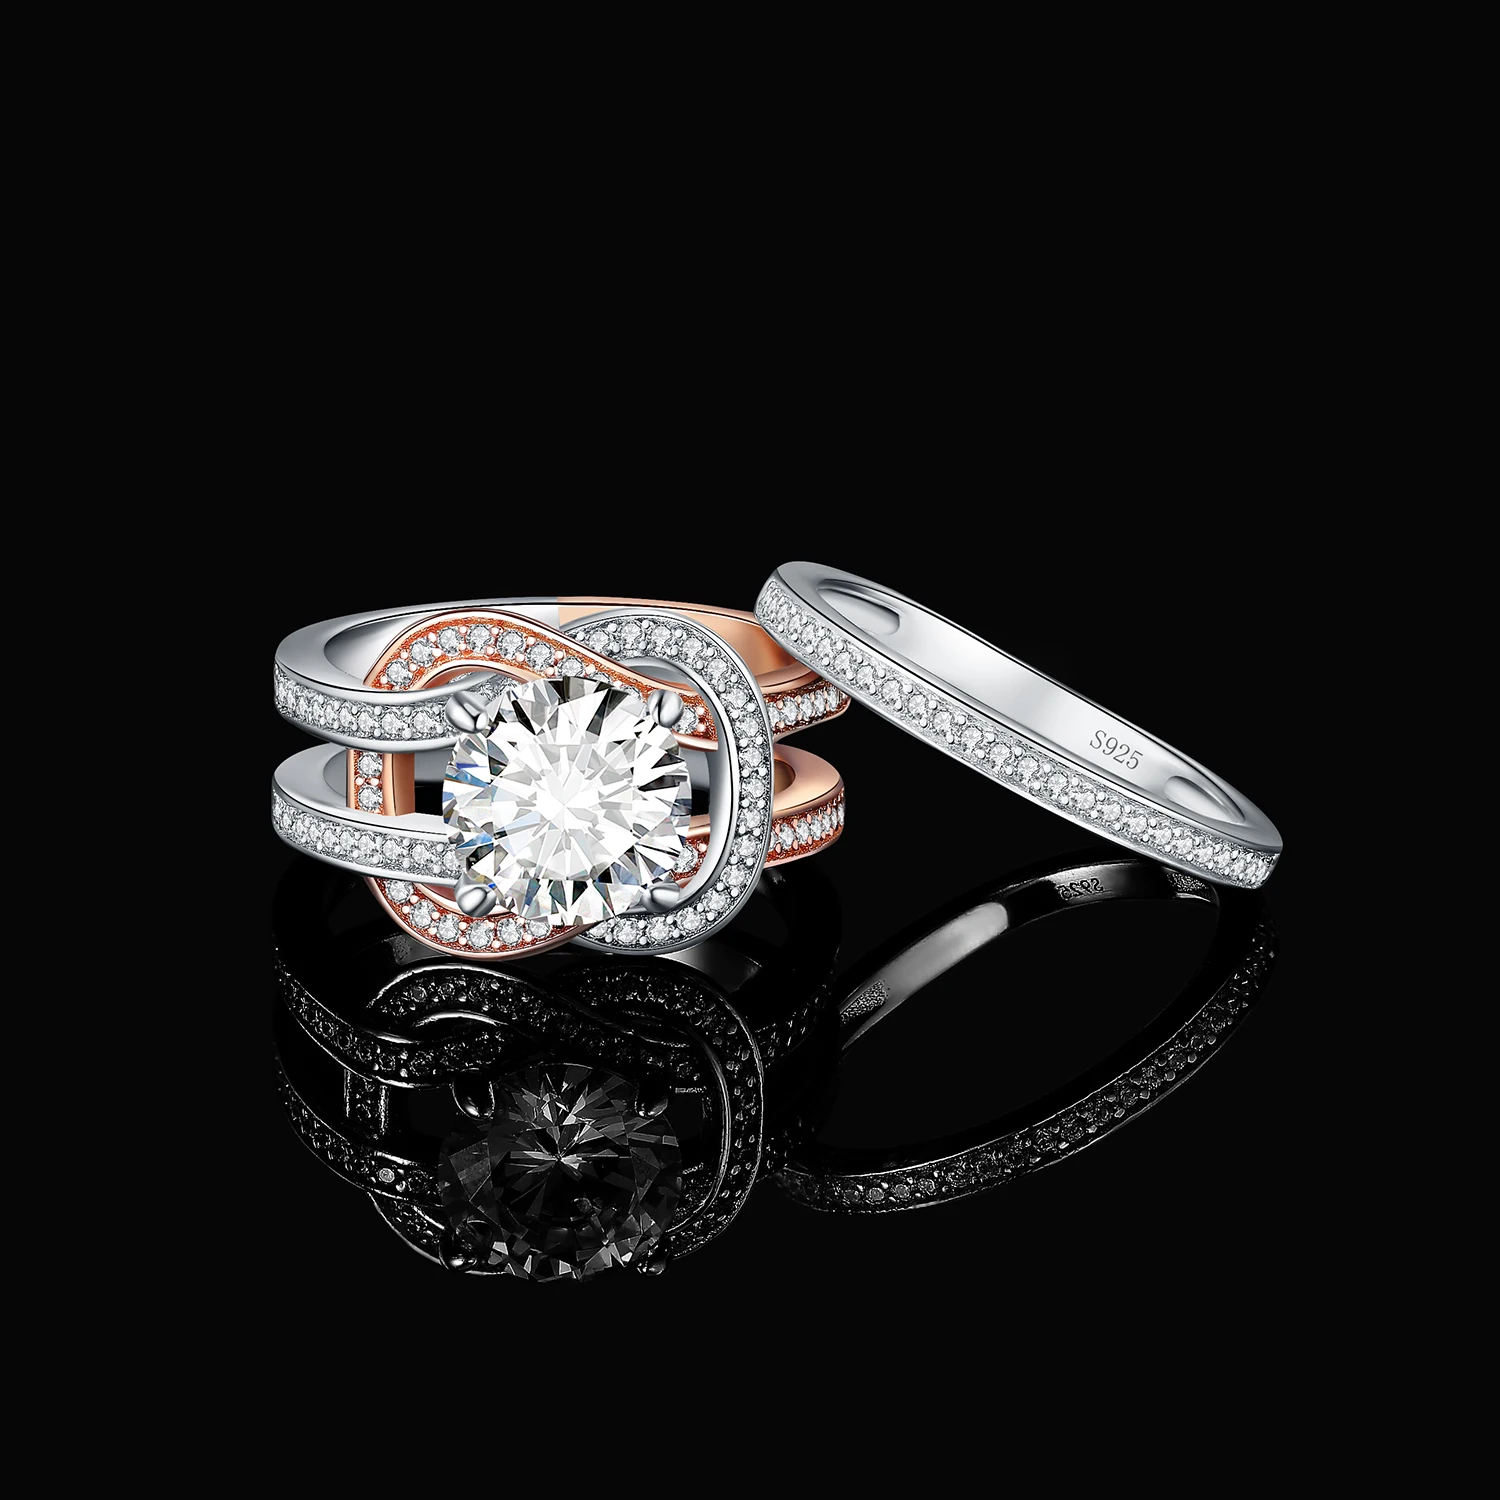 Görüntü /90805-Jewelrypalace-yeni-2-adet-925-ayar-gümüş-düğün_cdn/share-3.jpeg